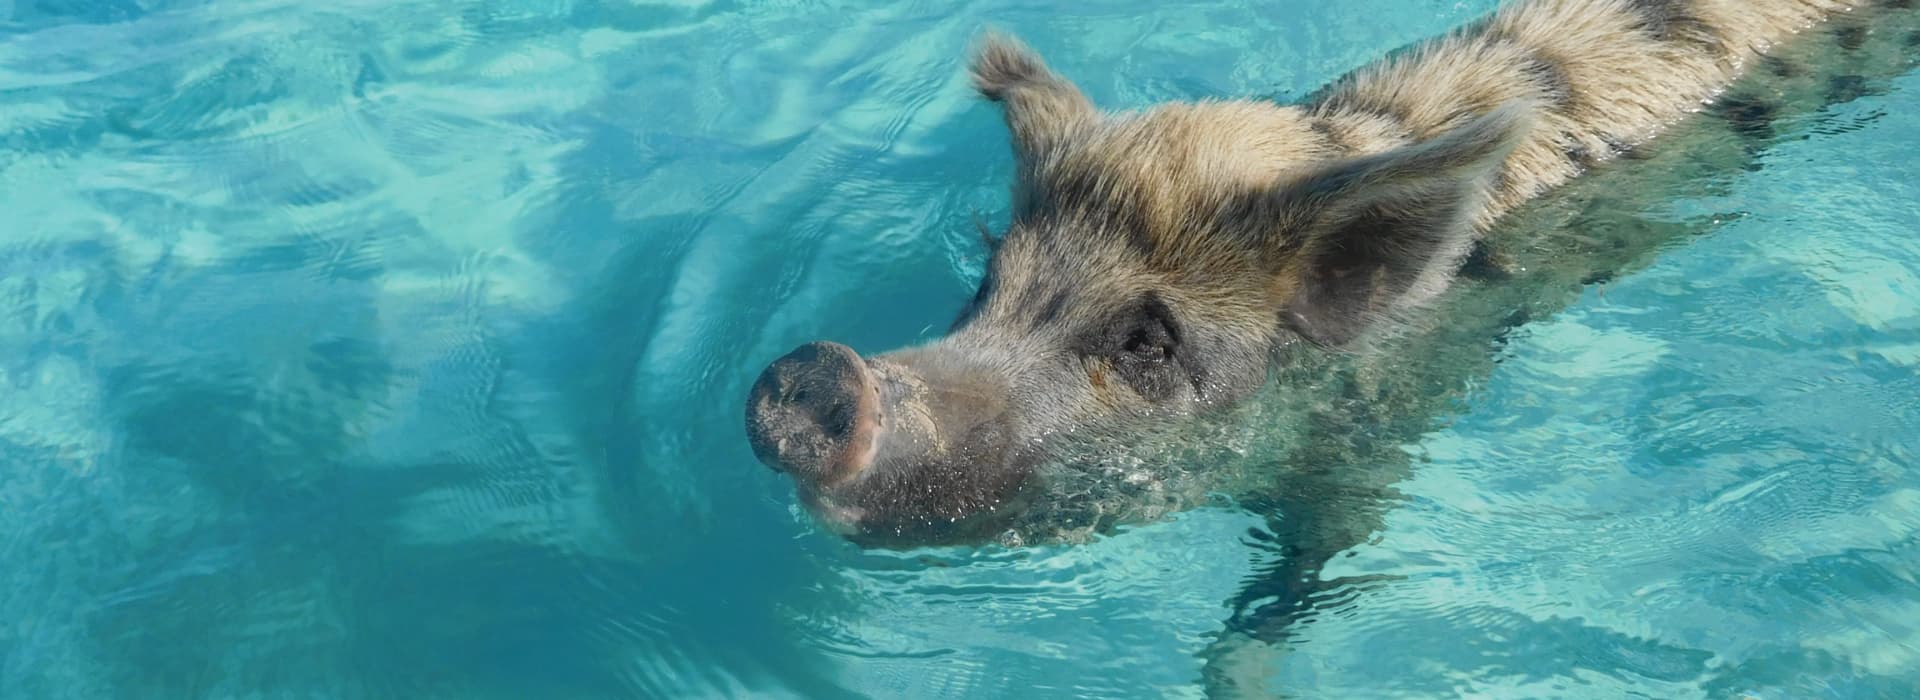 Swimming with a pig at big major cay bahamas